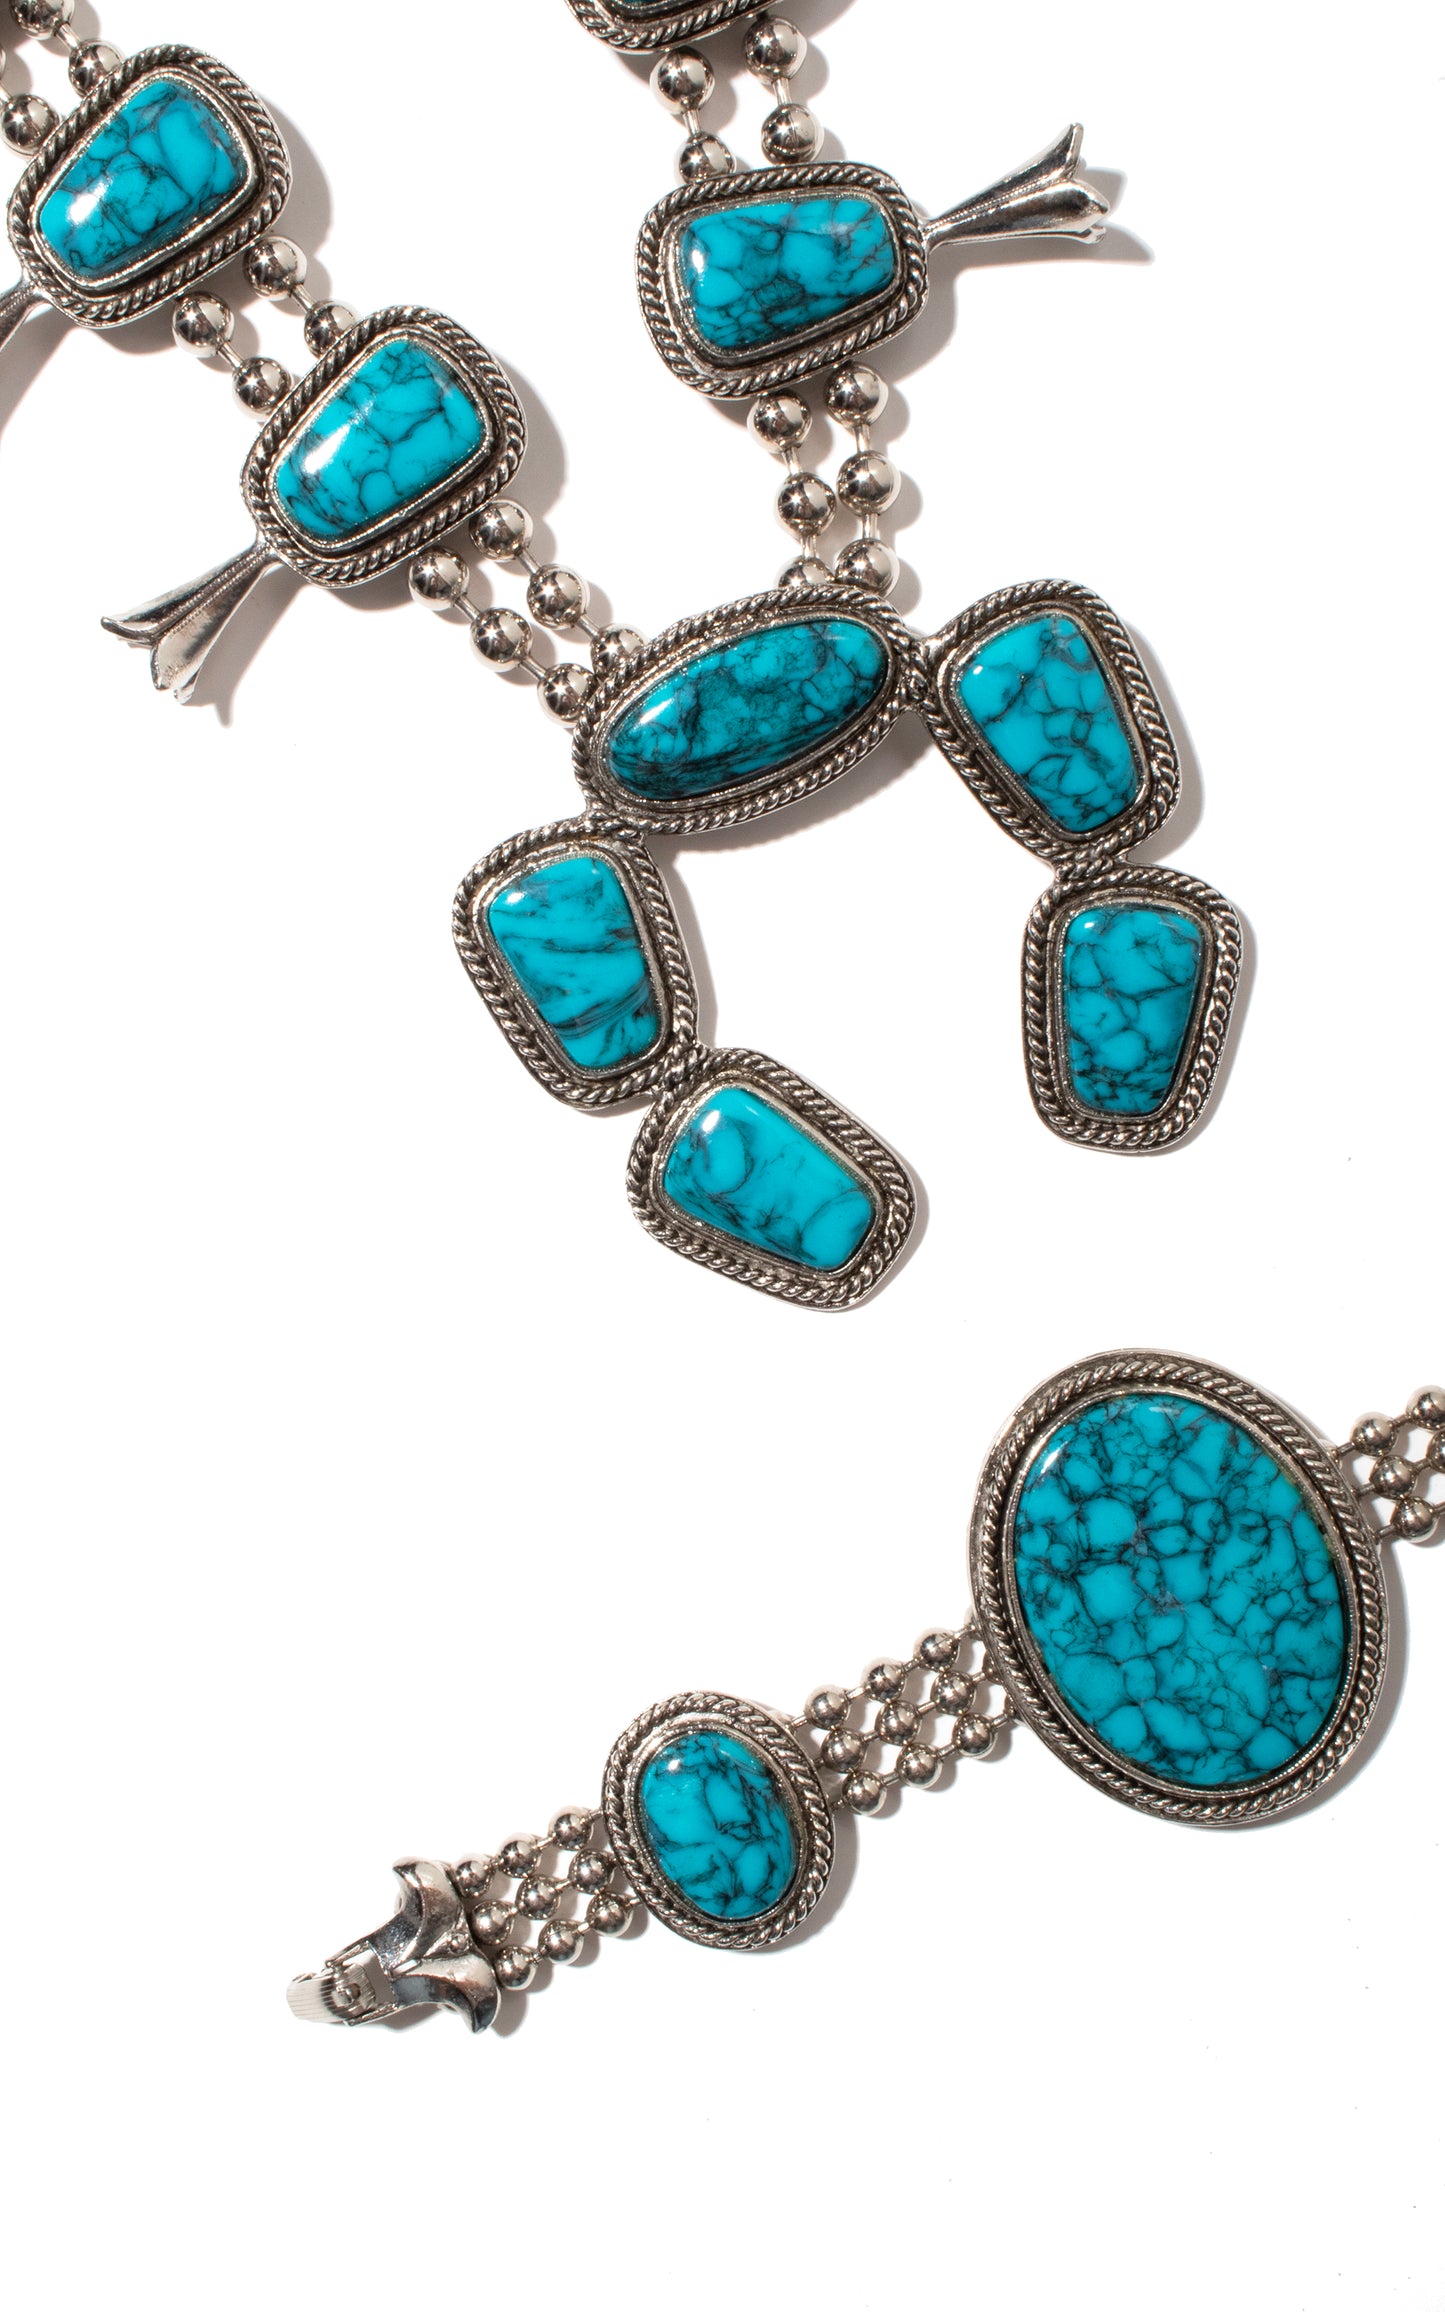 1970s Faux Turquoise & Silver Squash Blossom Necklace & Bracelet Set